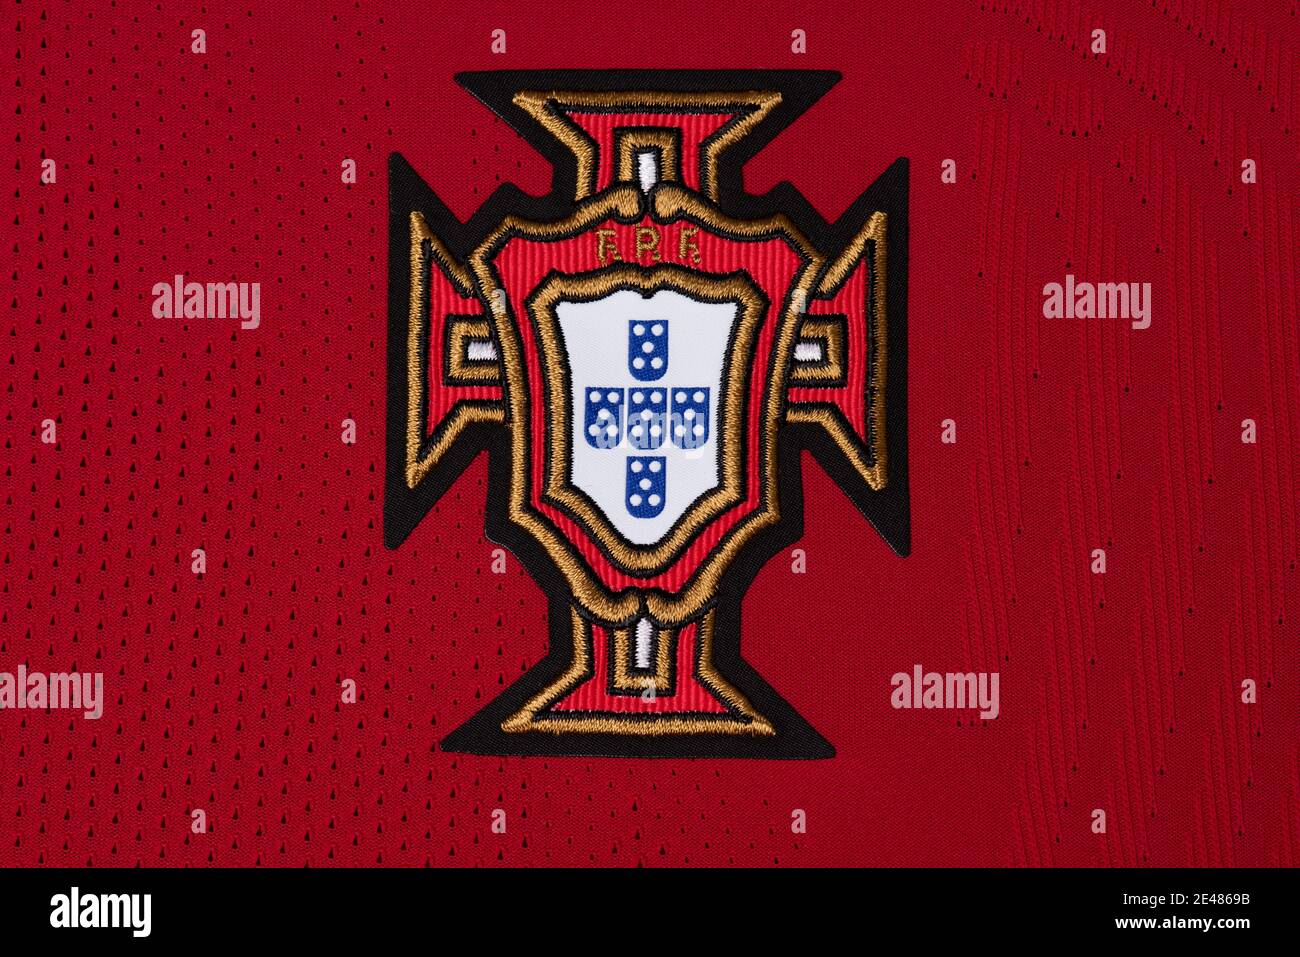 Primer plano de la equipación del equipo nacional de fútbol portugués Foto de stock